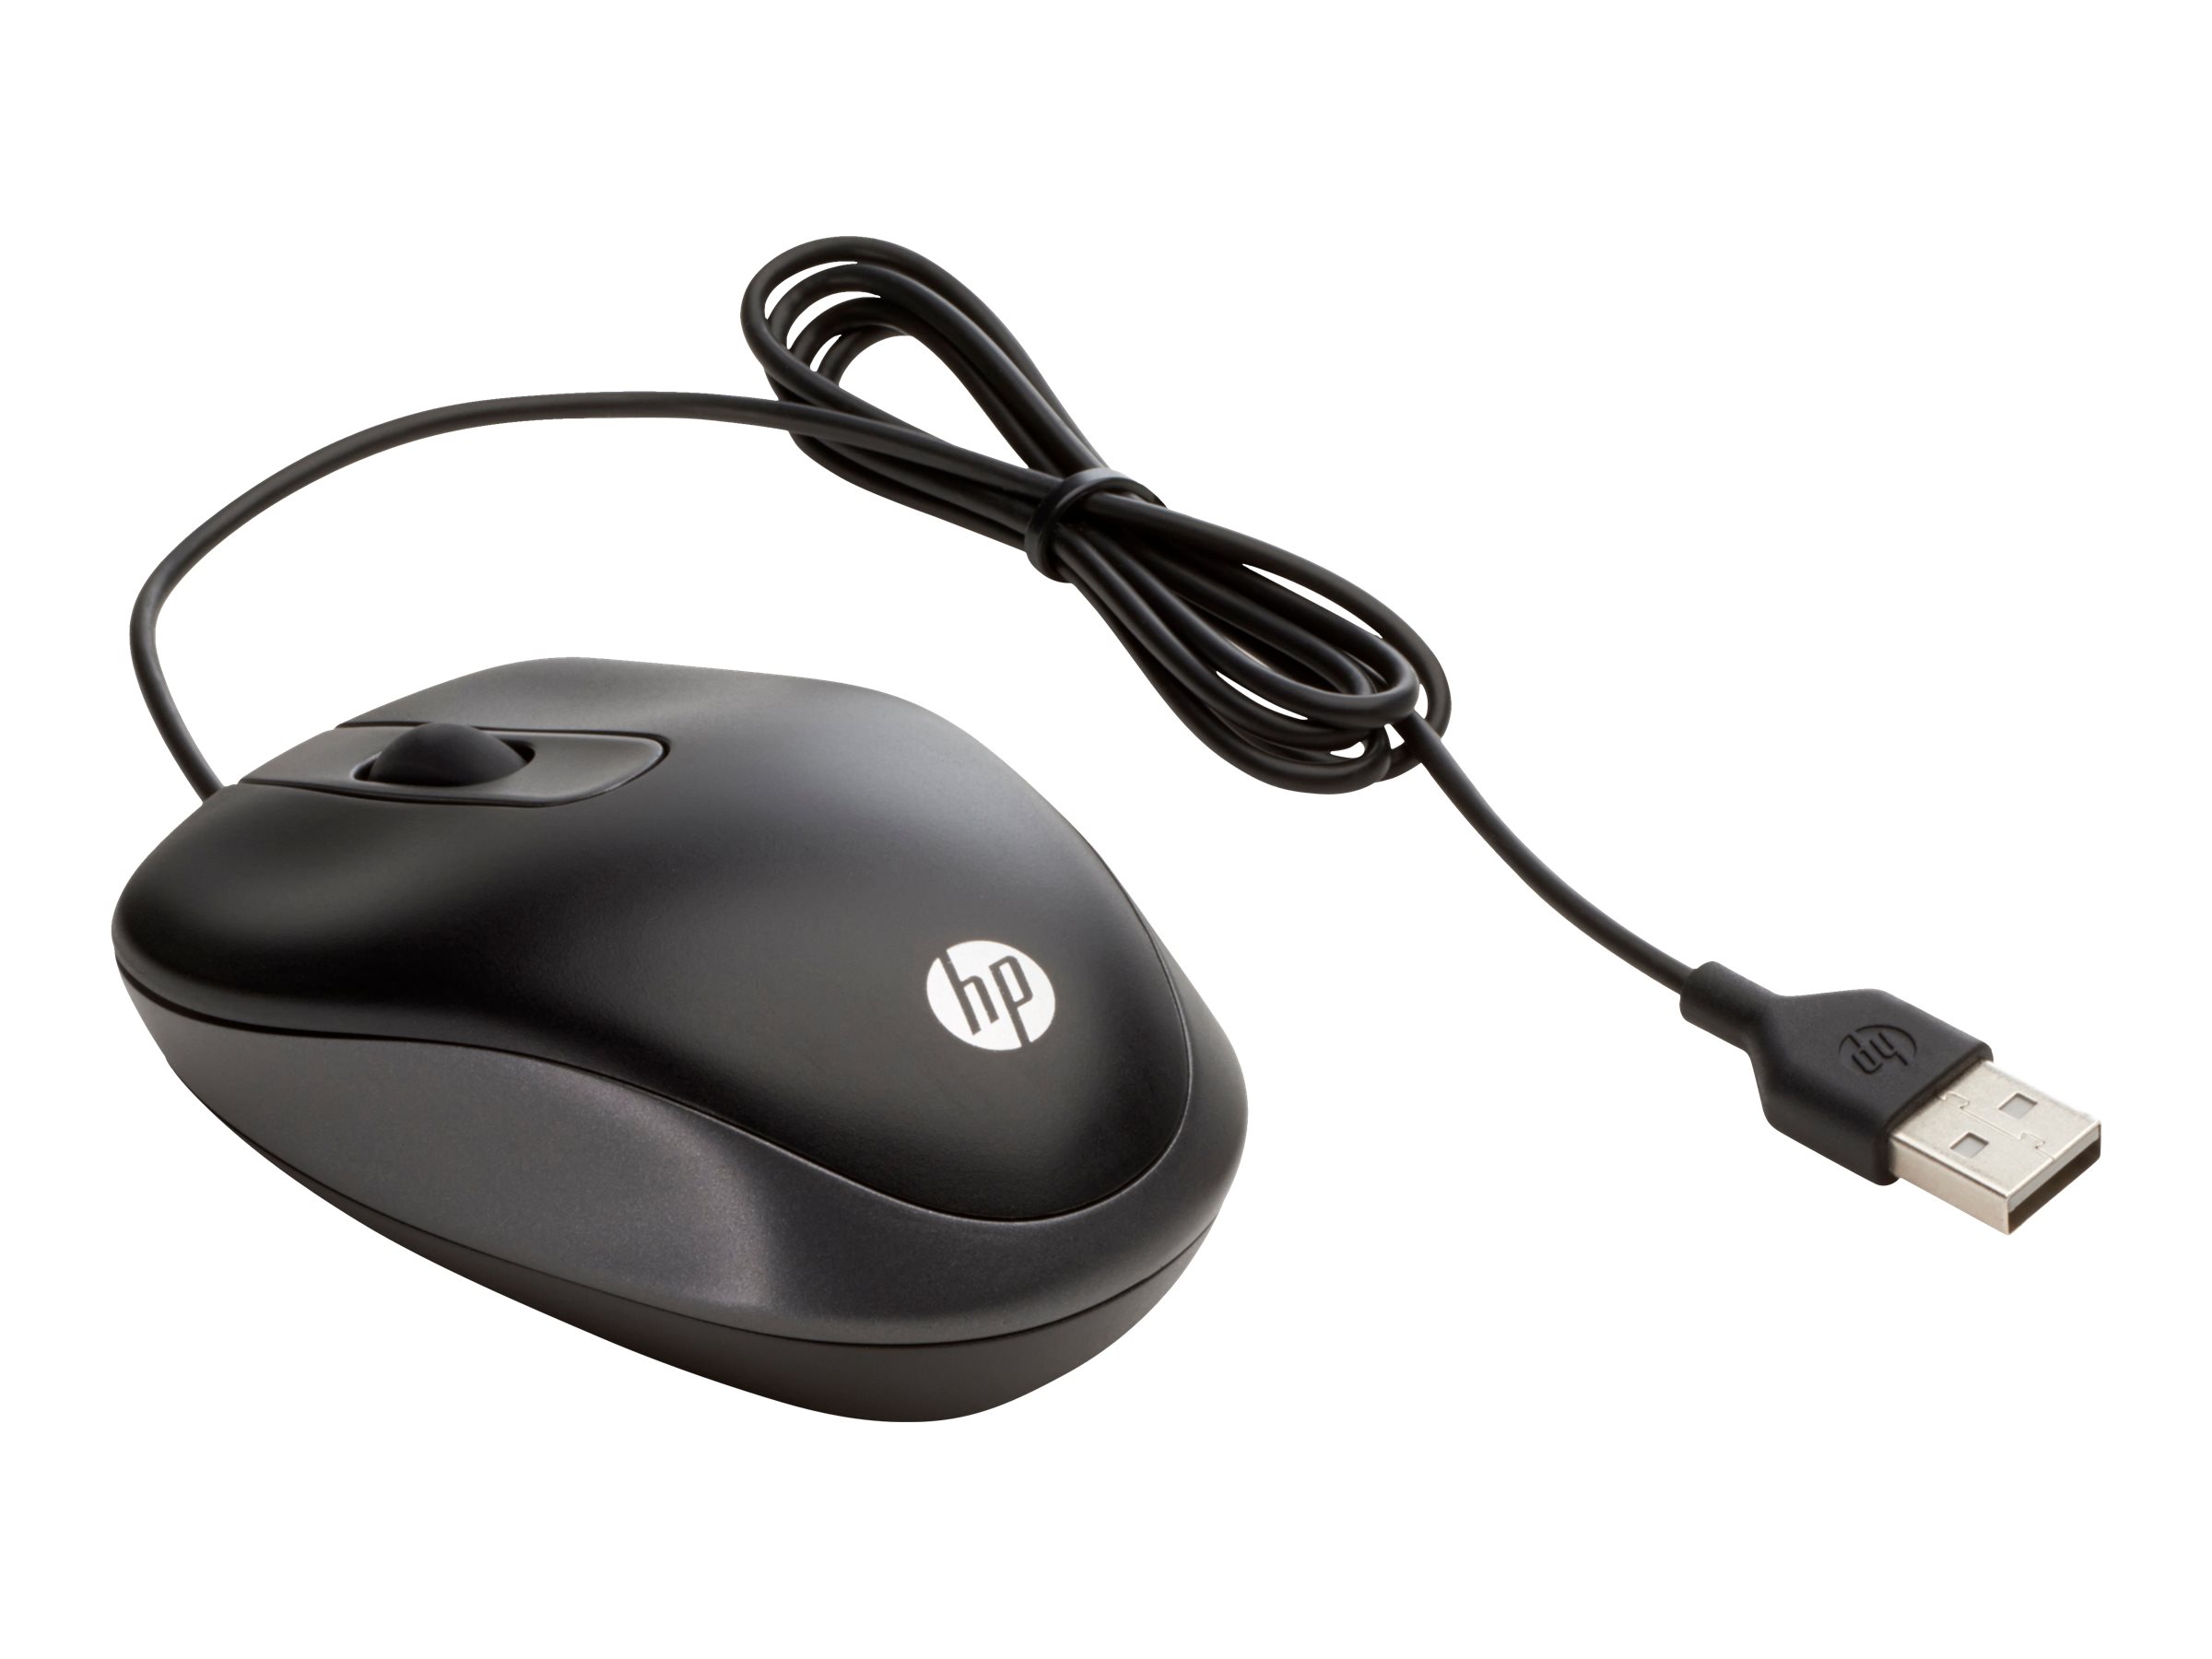 Hewlett Packard (HP) HP USB Travel Mouse